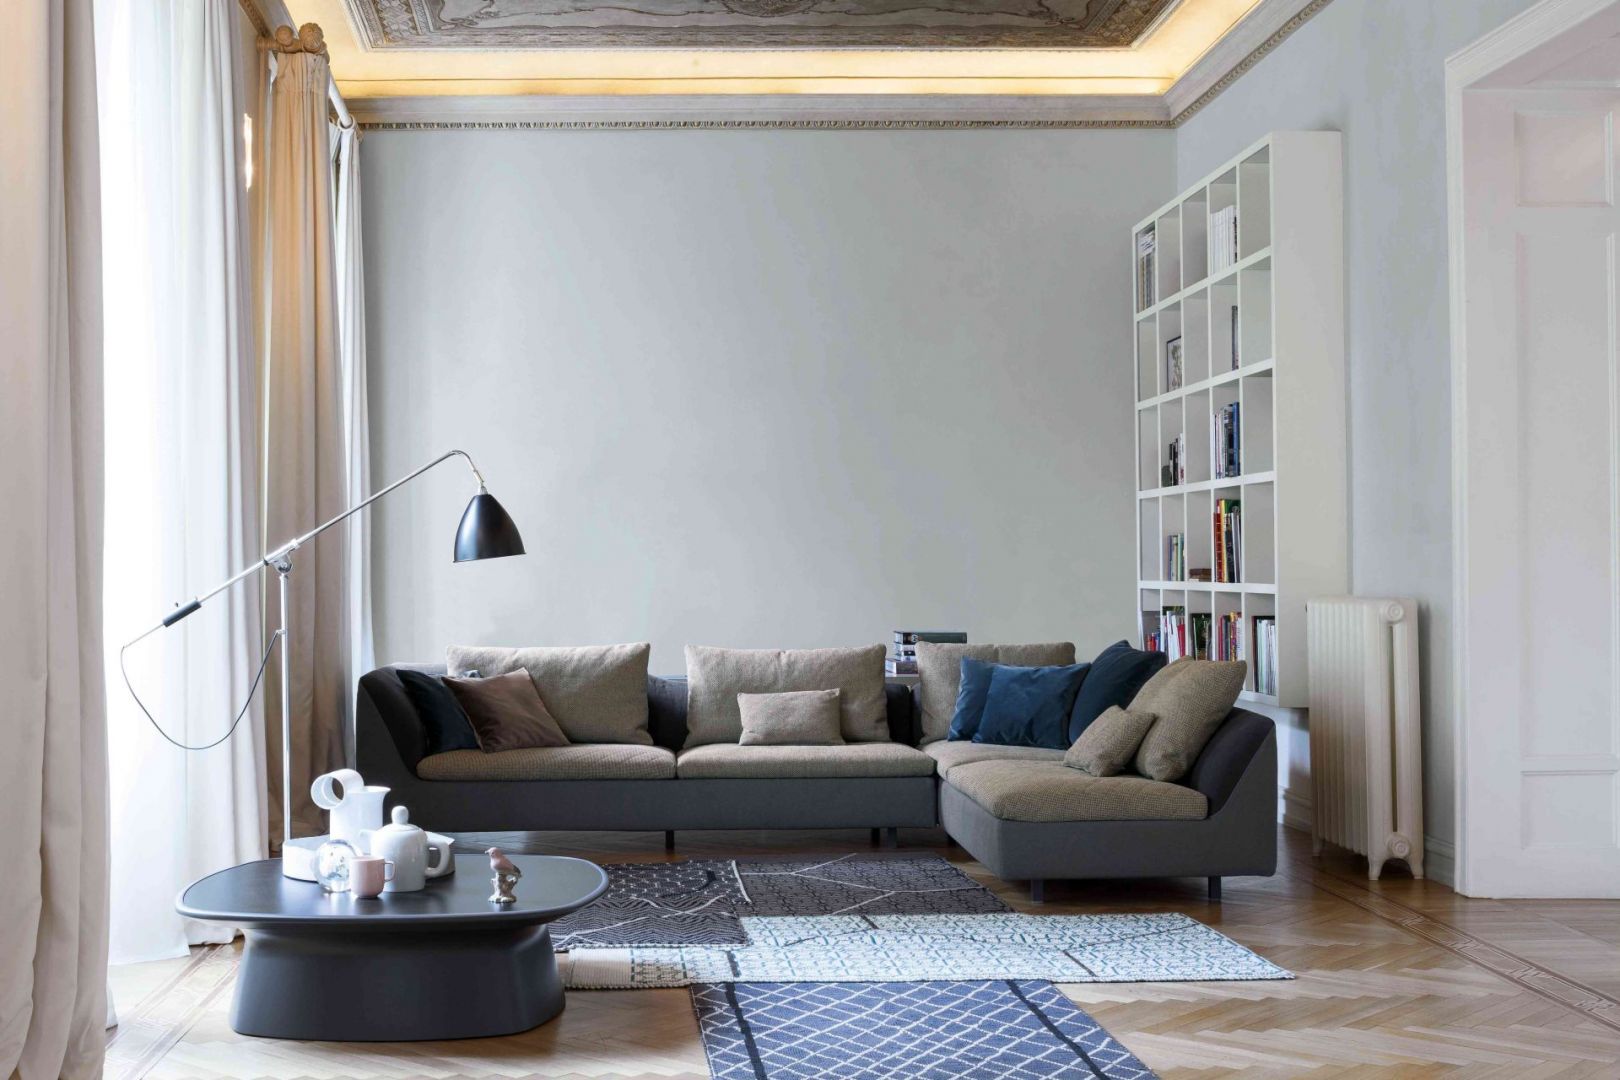 Piękny narożnik Aura w dwukolorowej wersji, który doskonale uzupełni wnętrza w stylu loft, modernistycznym oraz vintage. Fot. Bonaldo